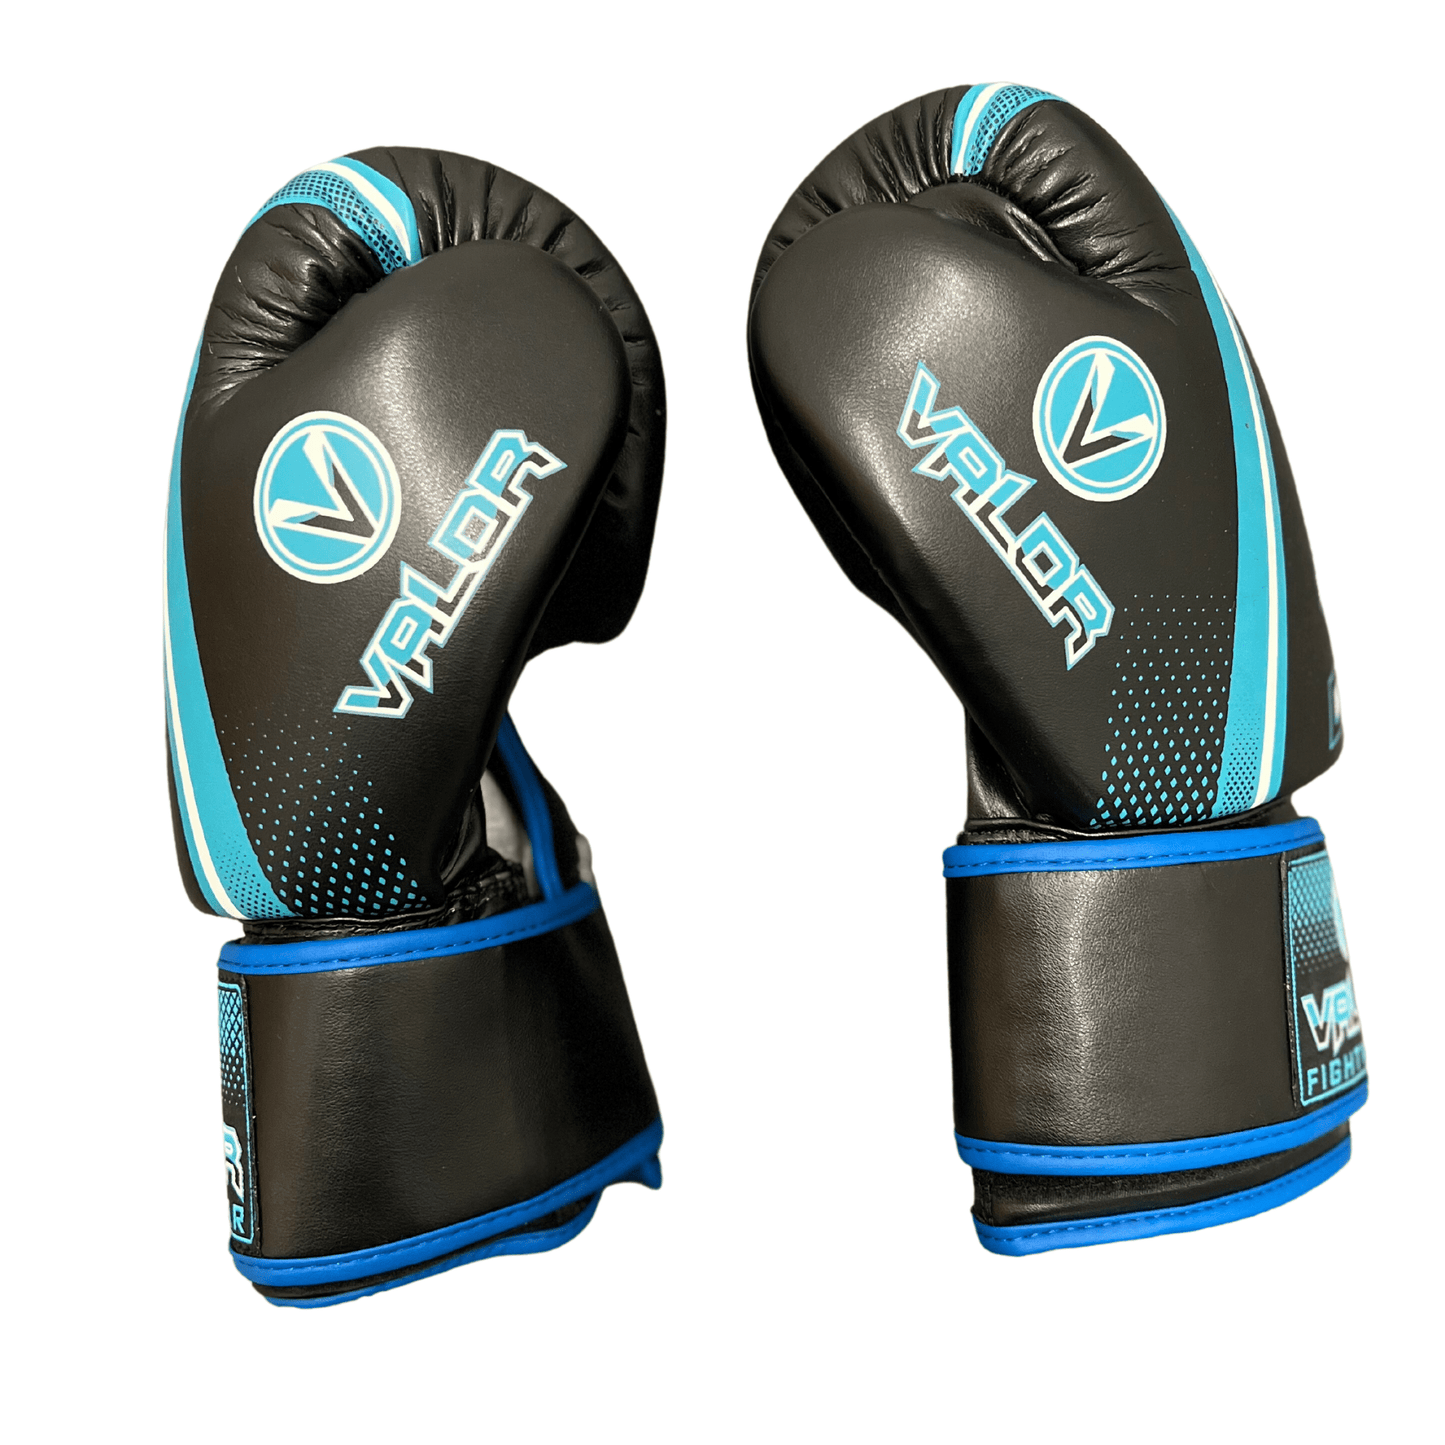 Fade 12oz Boxing Gloves - Black/Blue - Valor Fightwear Boxing Gloves Valor Fightwear   